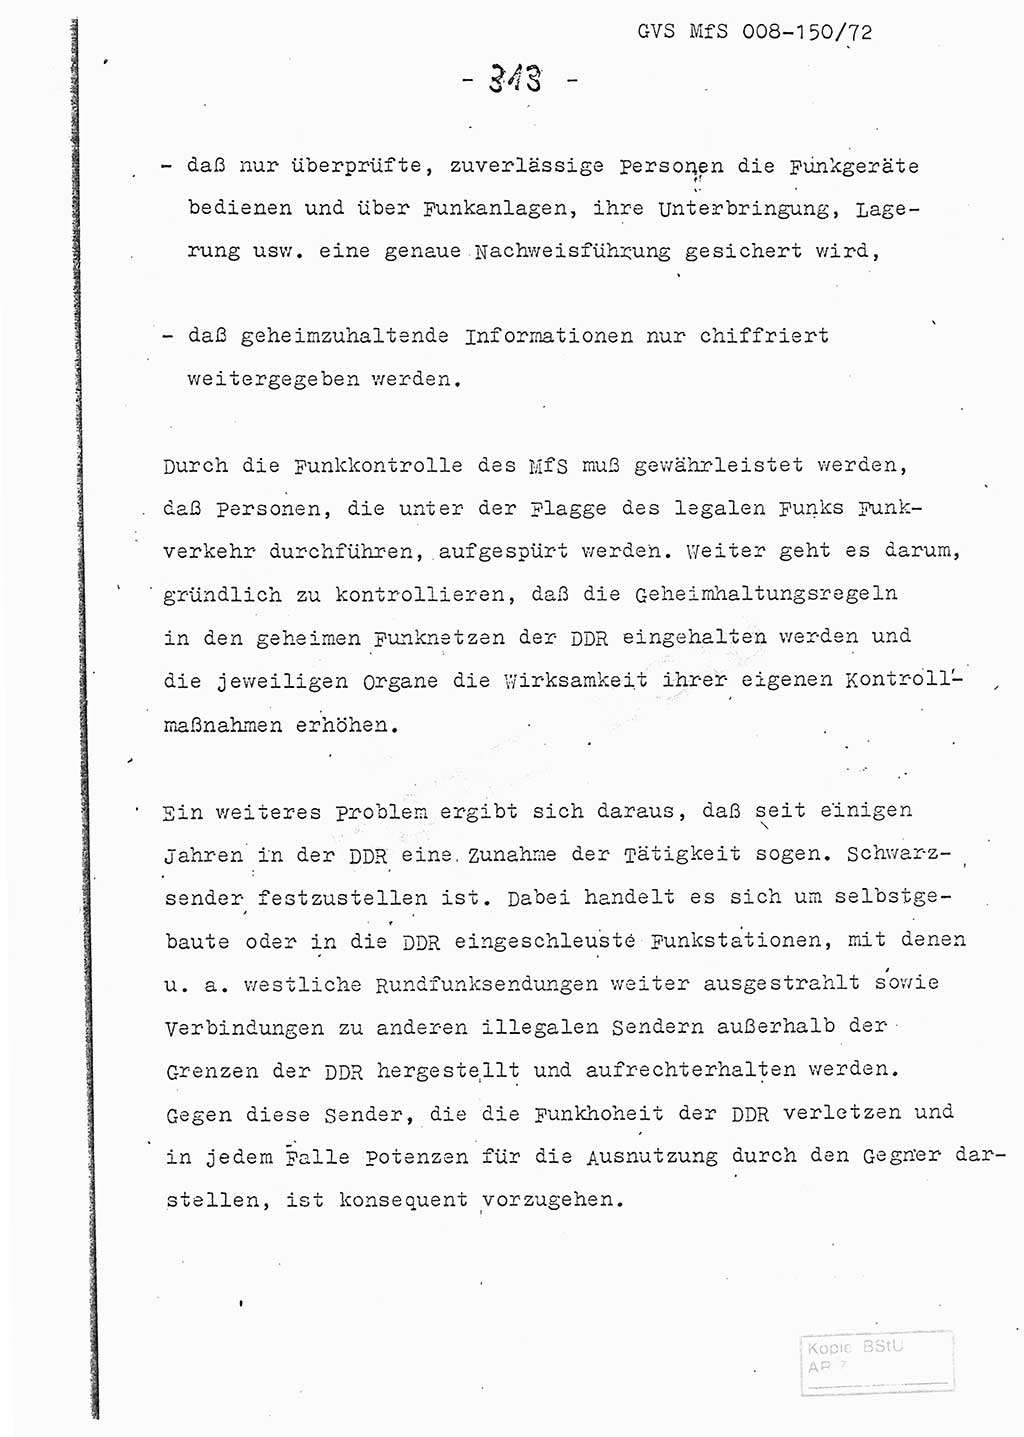 Referat (Entwurf) des Genossen Minister (Generaloberst Erich Mielke) auf der Dienstkonferenz 1972, Ministerium für Staatssicherheit (MfS) [Deutsche Demokratische Republik (DDR)], Der Minister, Geheime Verschlußsache (GVS) 008-150/72, Berlin 25.2.1972, Seite 313 (Ref. Entw. DK MfS DDR Min. GVS 008-150/72 1972, S. 313)